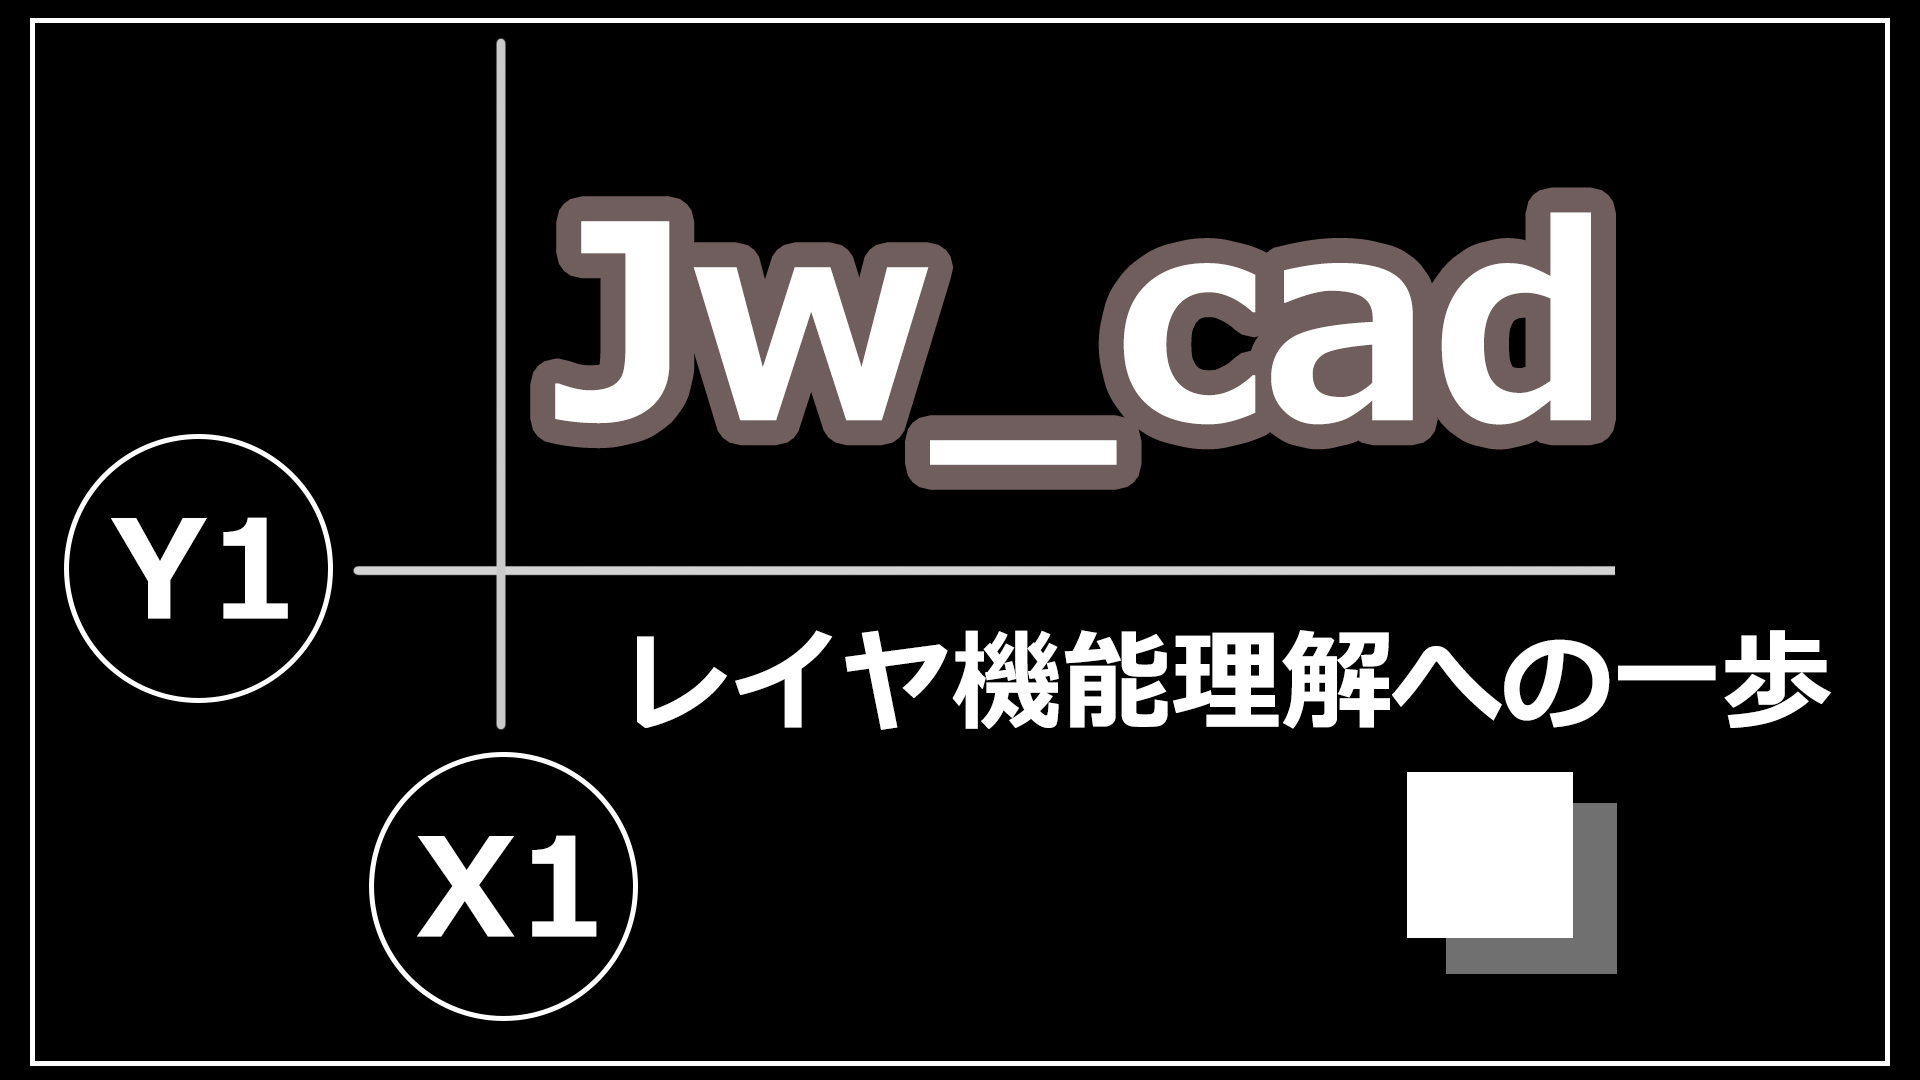 【無料2次元CAD】Jw_cad 初心者向けレイヤ機能の使い方